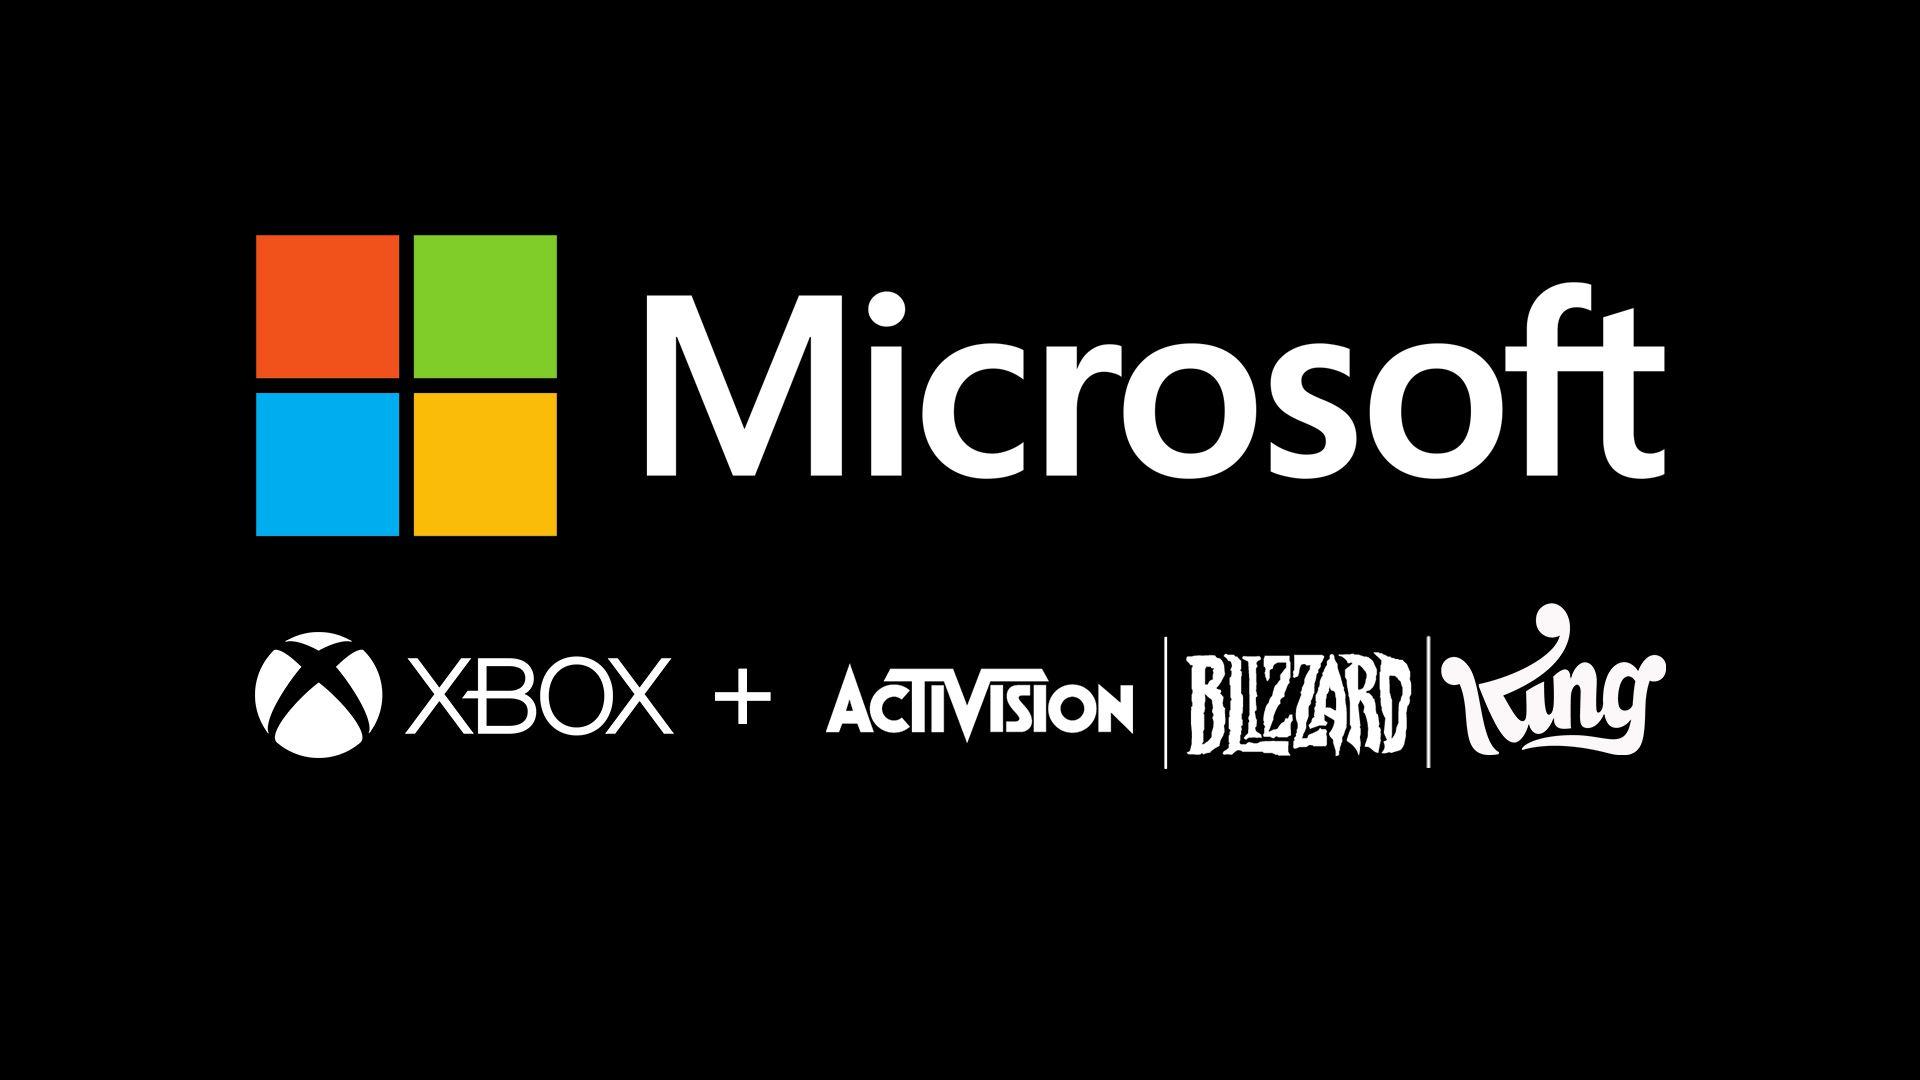 Activision все еще уверена в завершении сделки с Microsoft к июню 2023 года